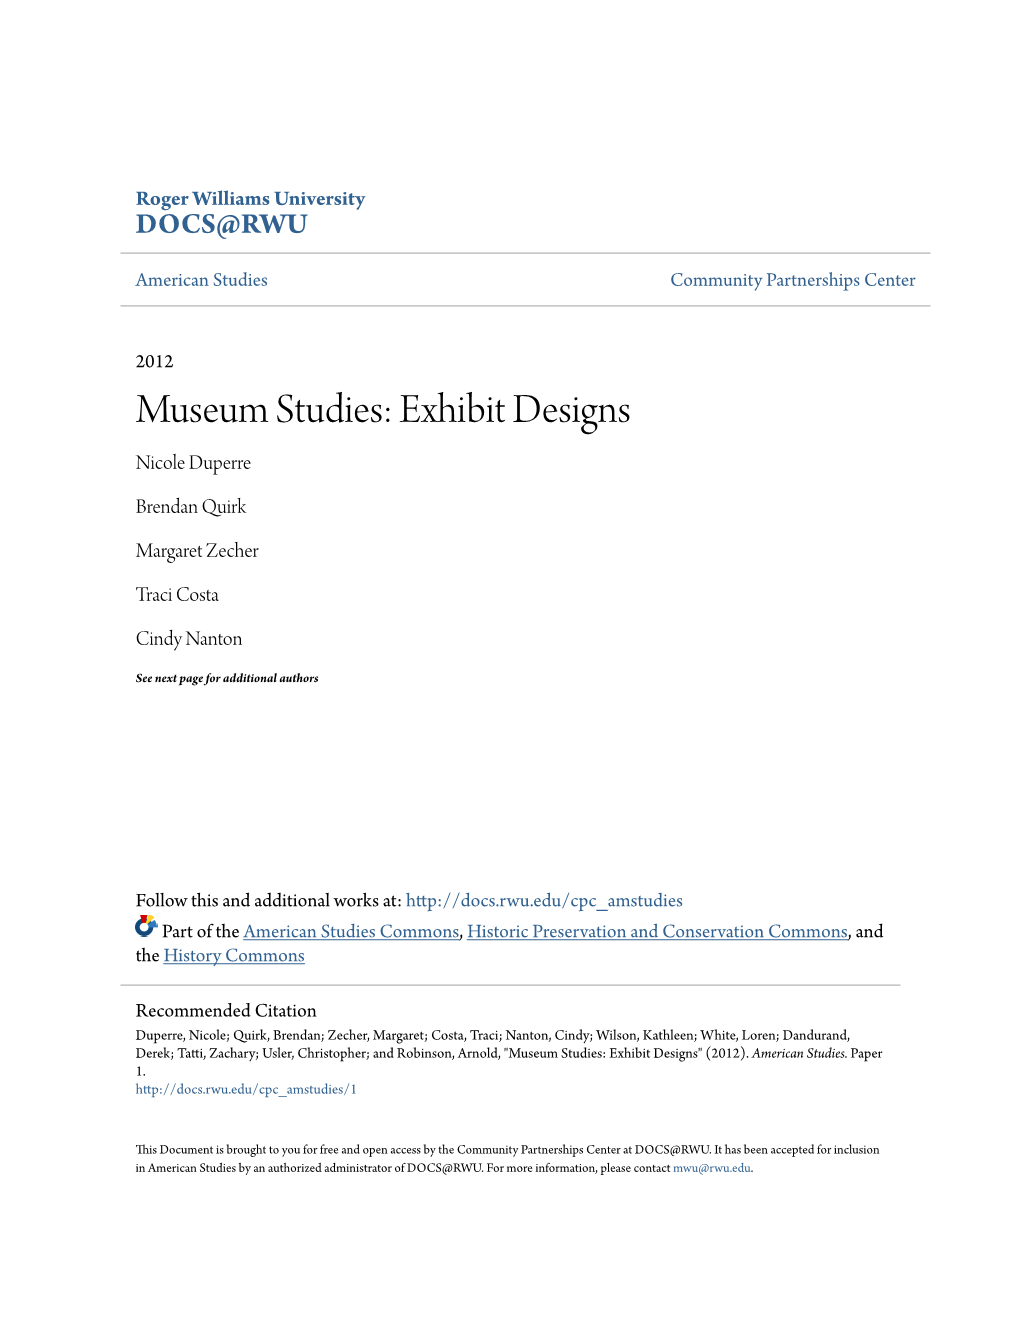 Museum Studies: Exhibit Designs Nicole Duperre